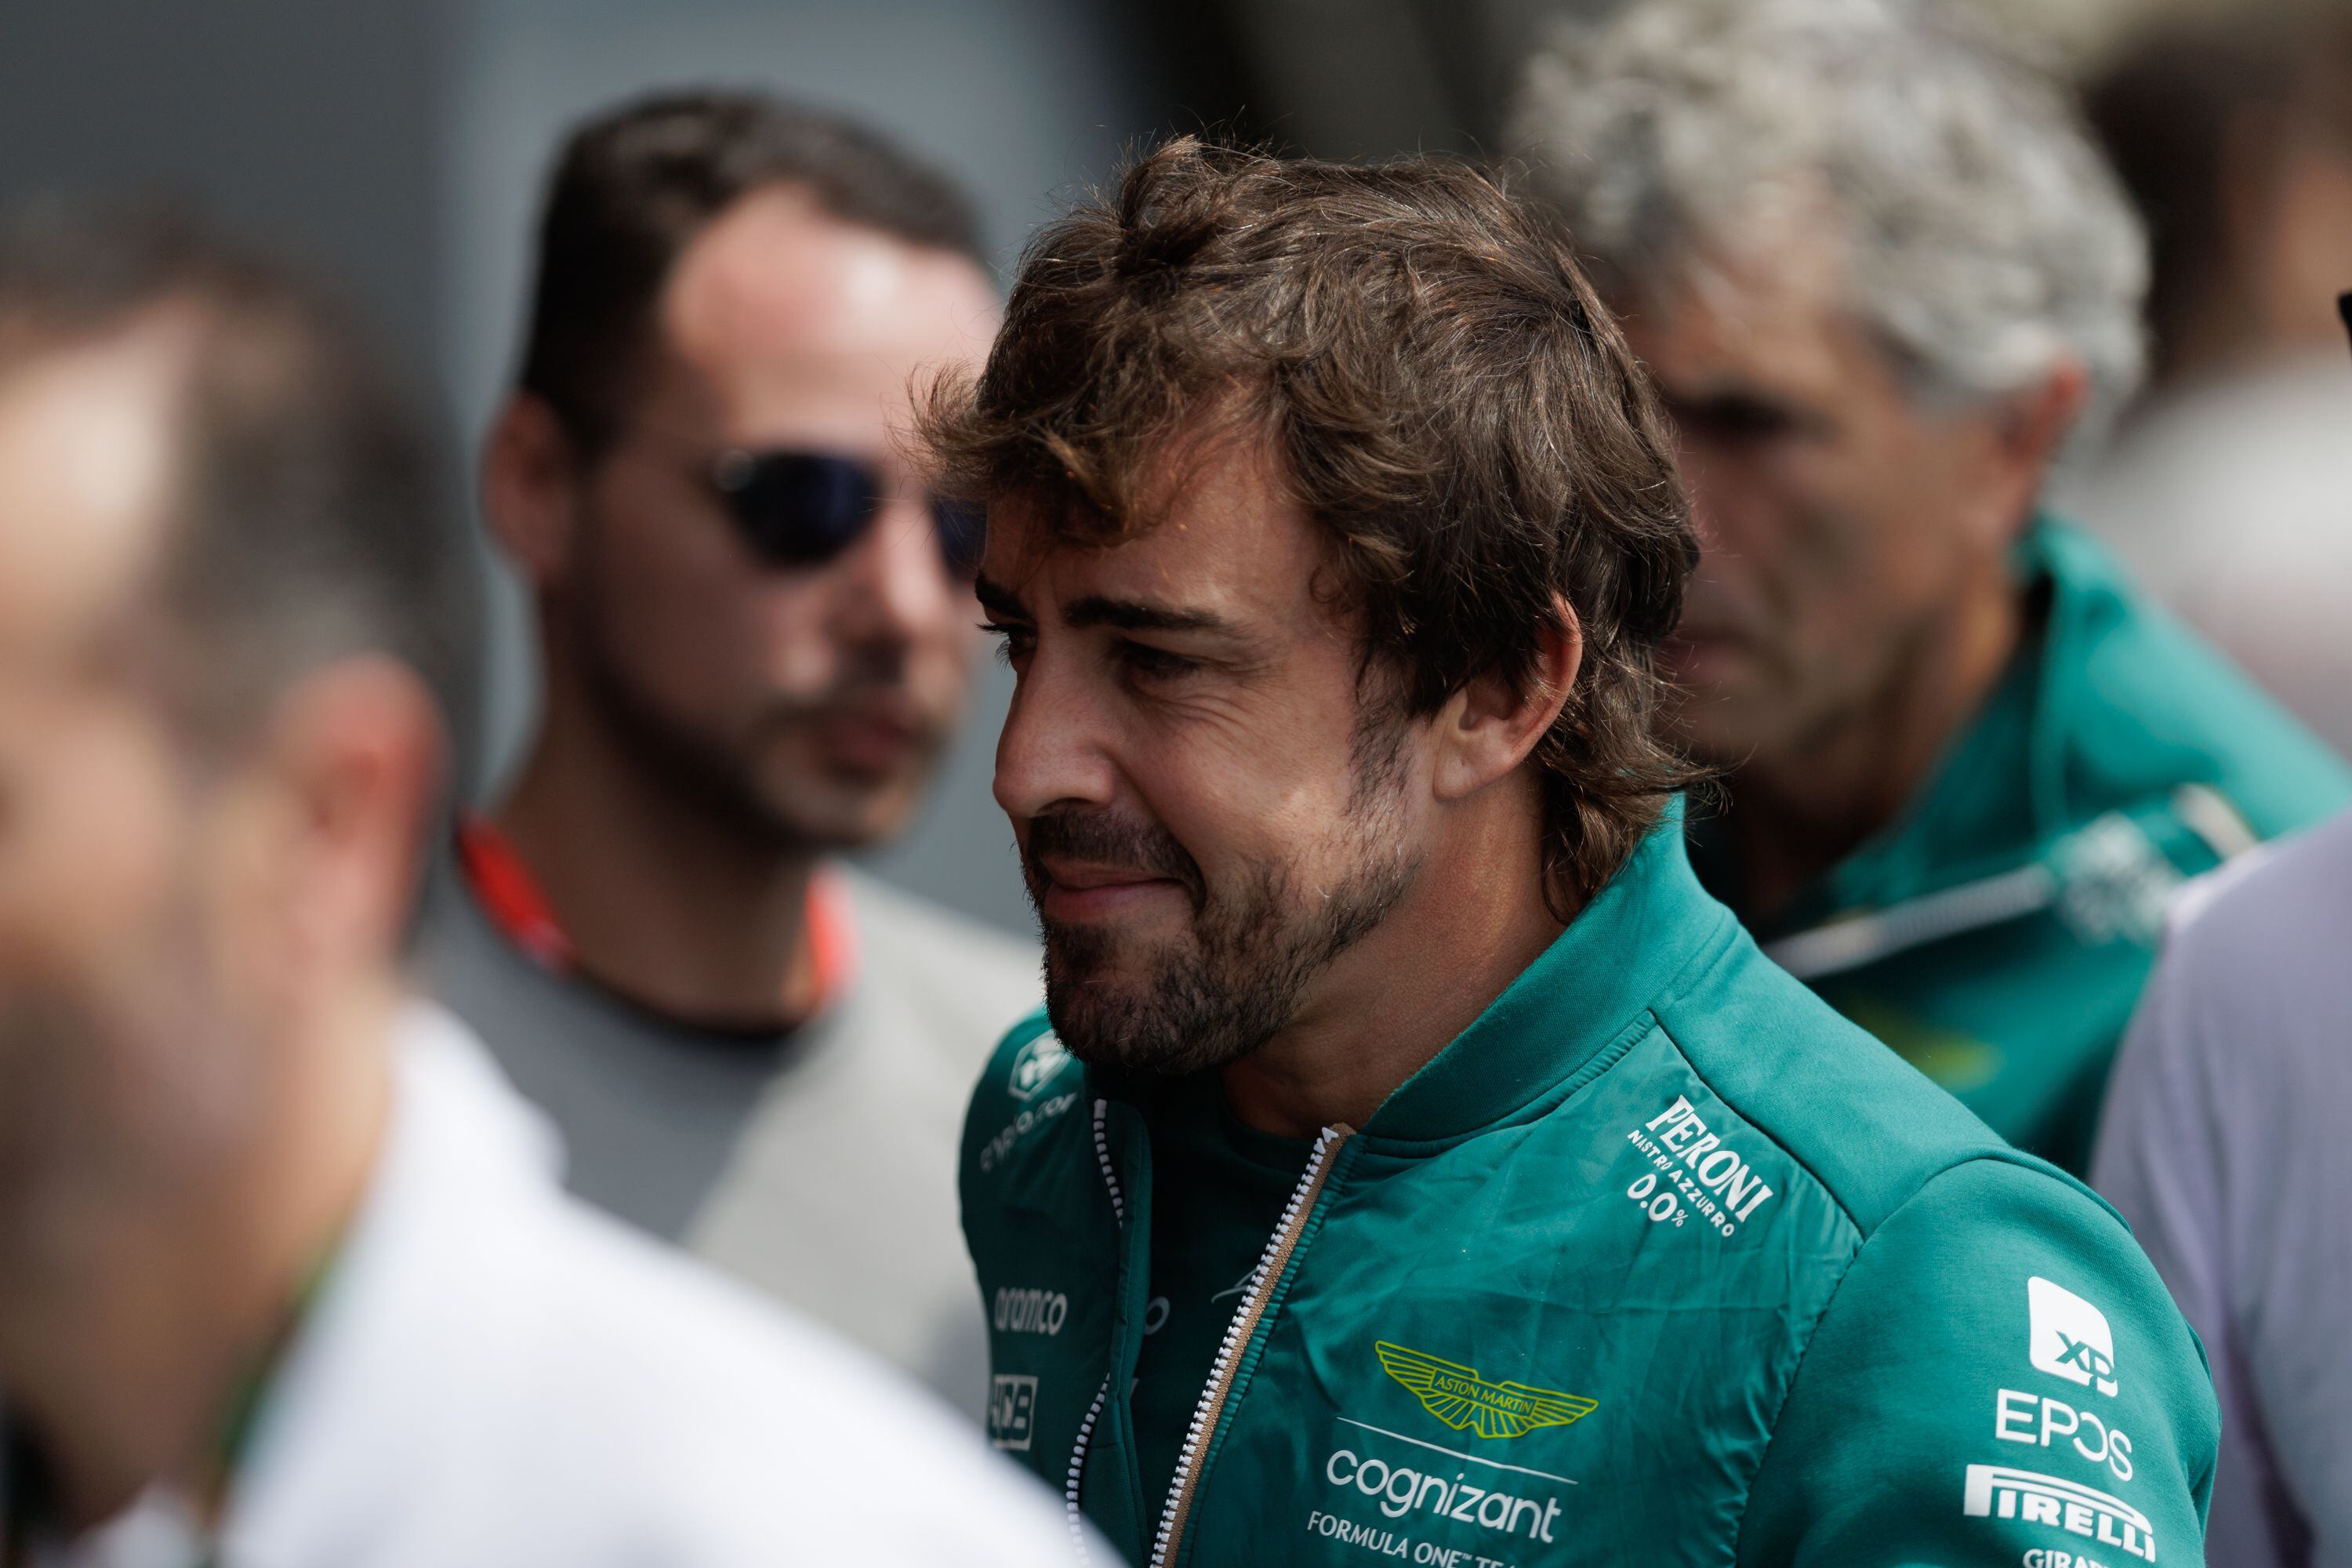 El piloto español del equipo Aston Martín de F1, Fernando Alonso, fue registrado este viernes, 3 de noviembre, durante los ensayos libres previos al GP de Brasil, en el circuito de Interlagos, en Sao Paulo (Brasil). EFE/Isaac Fontana 